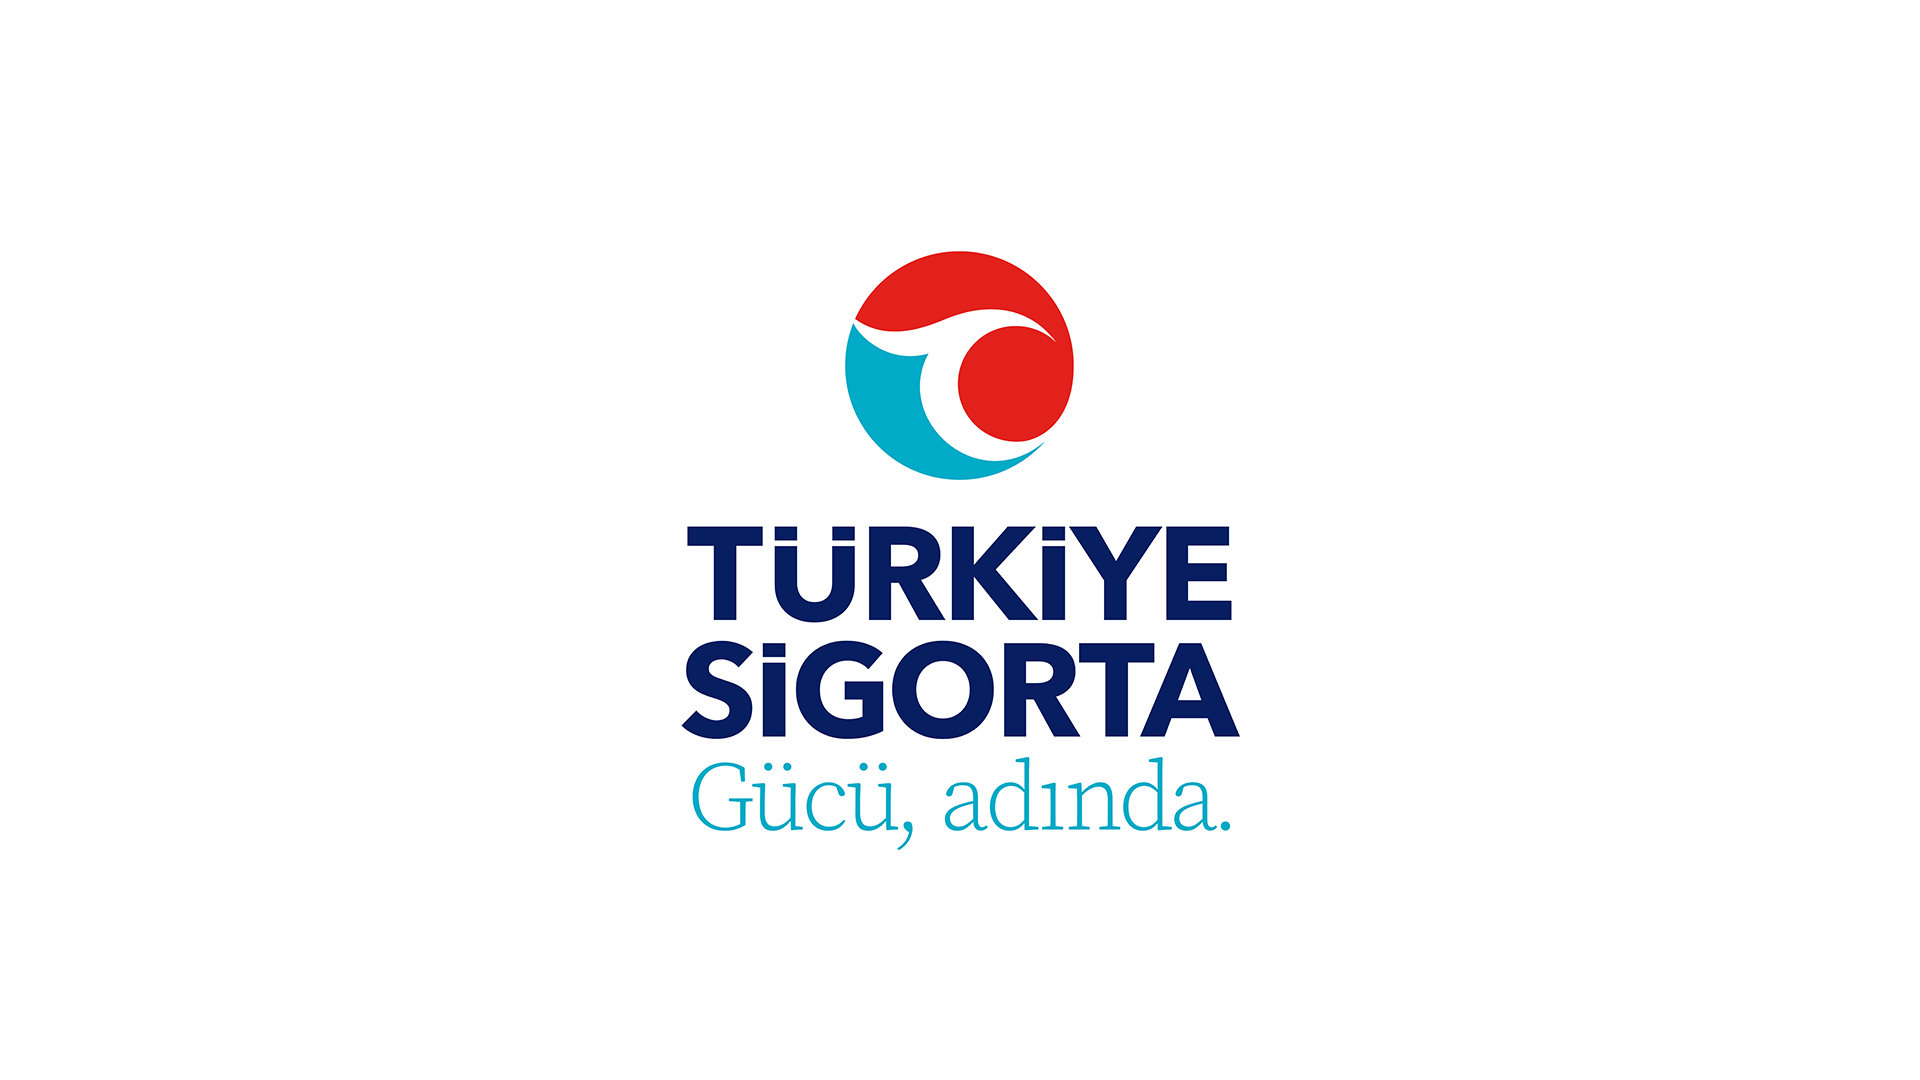 Türkiye Sigorta’dan sağlık çalışanlarına özel indirim.